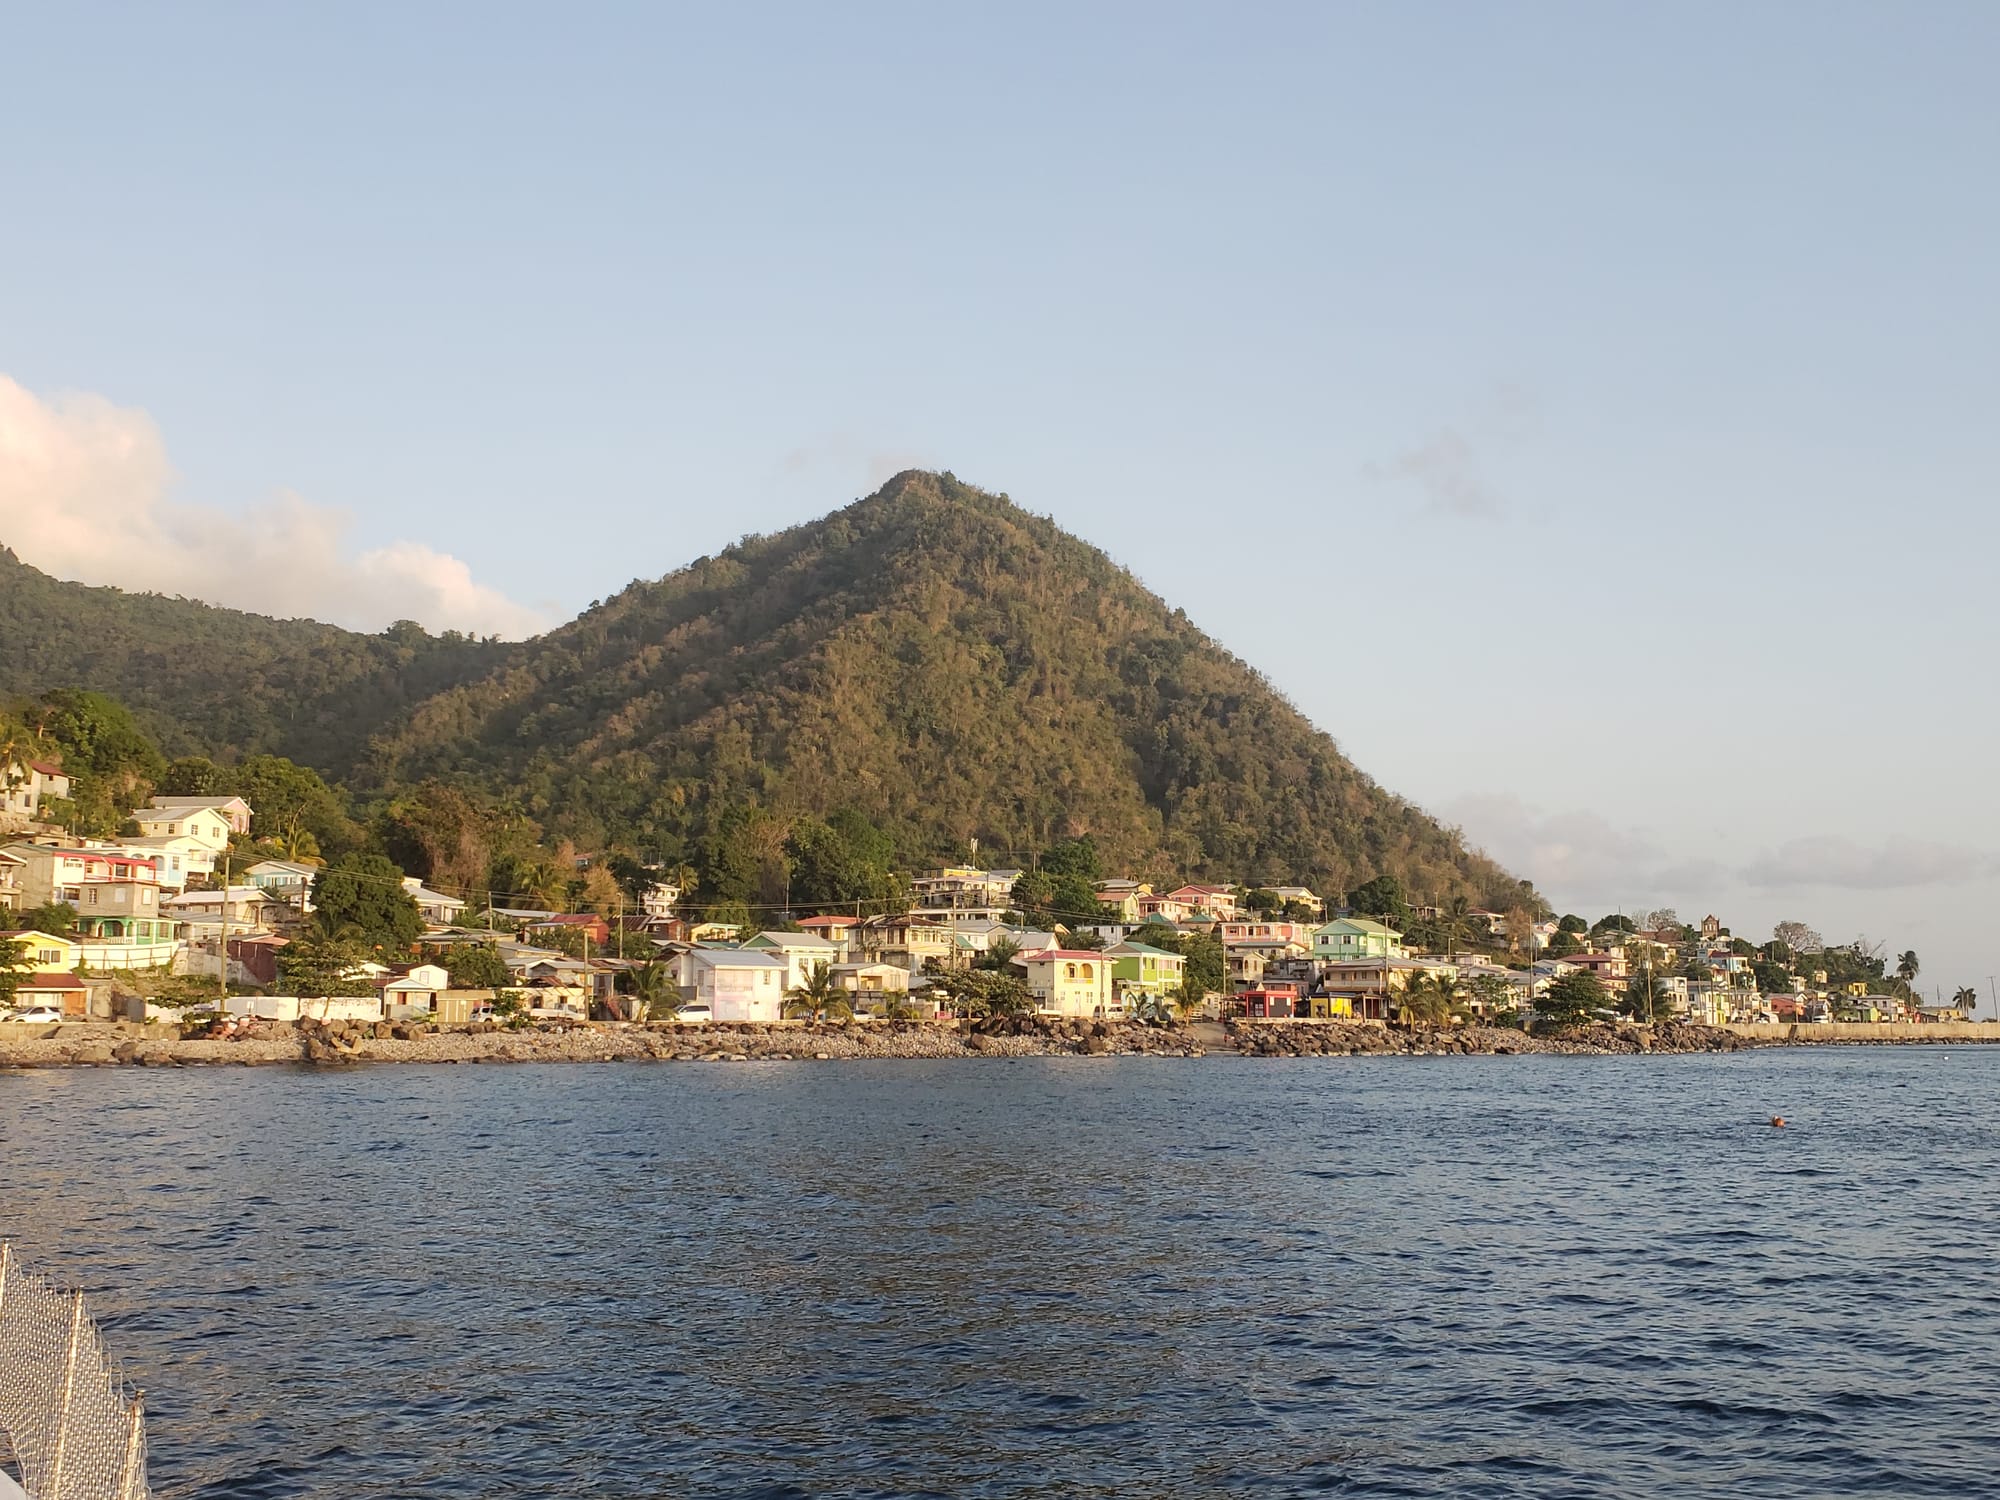 Farewell Dominica, hello Martinique!